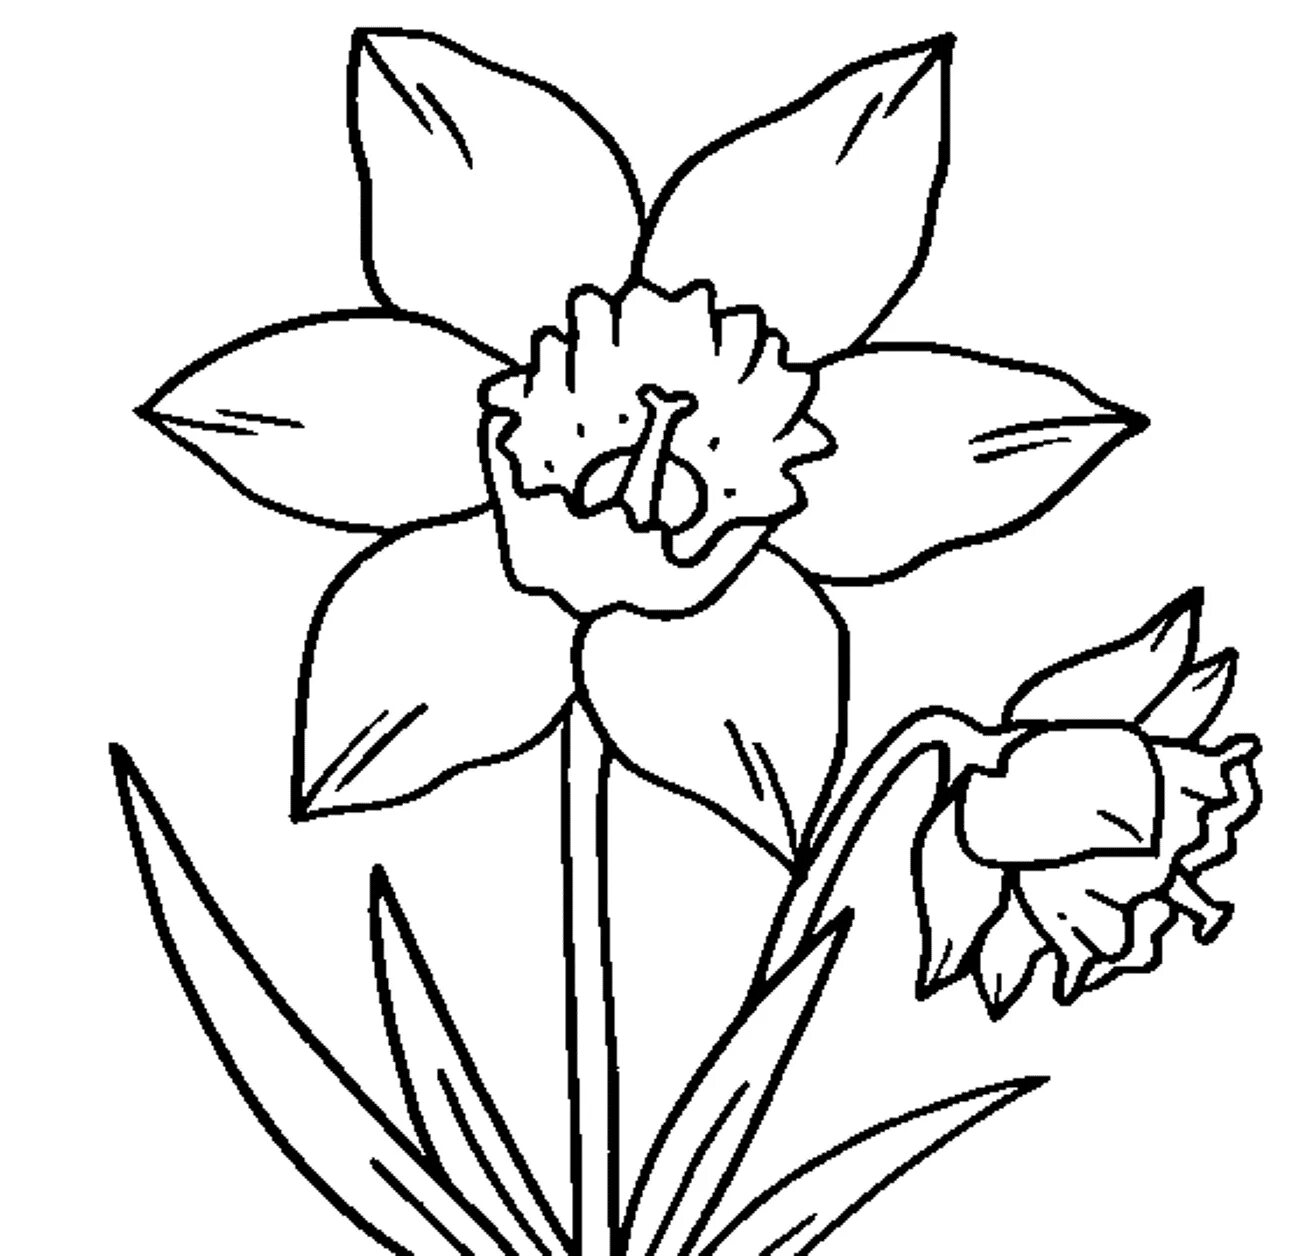 Daffodil flower #3